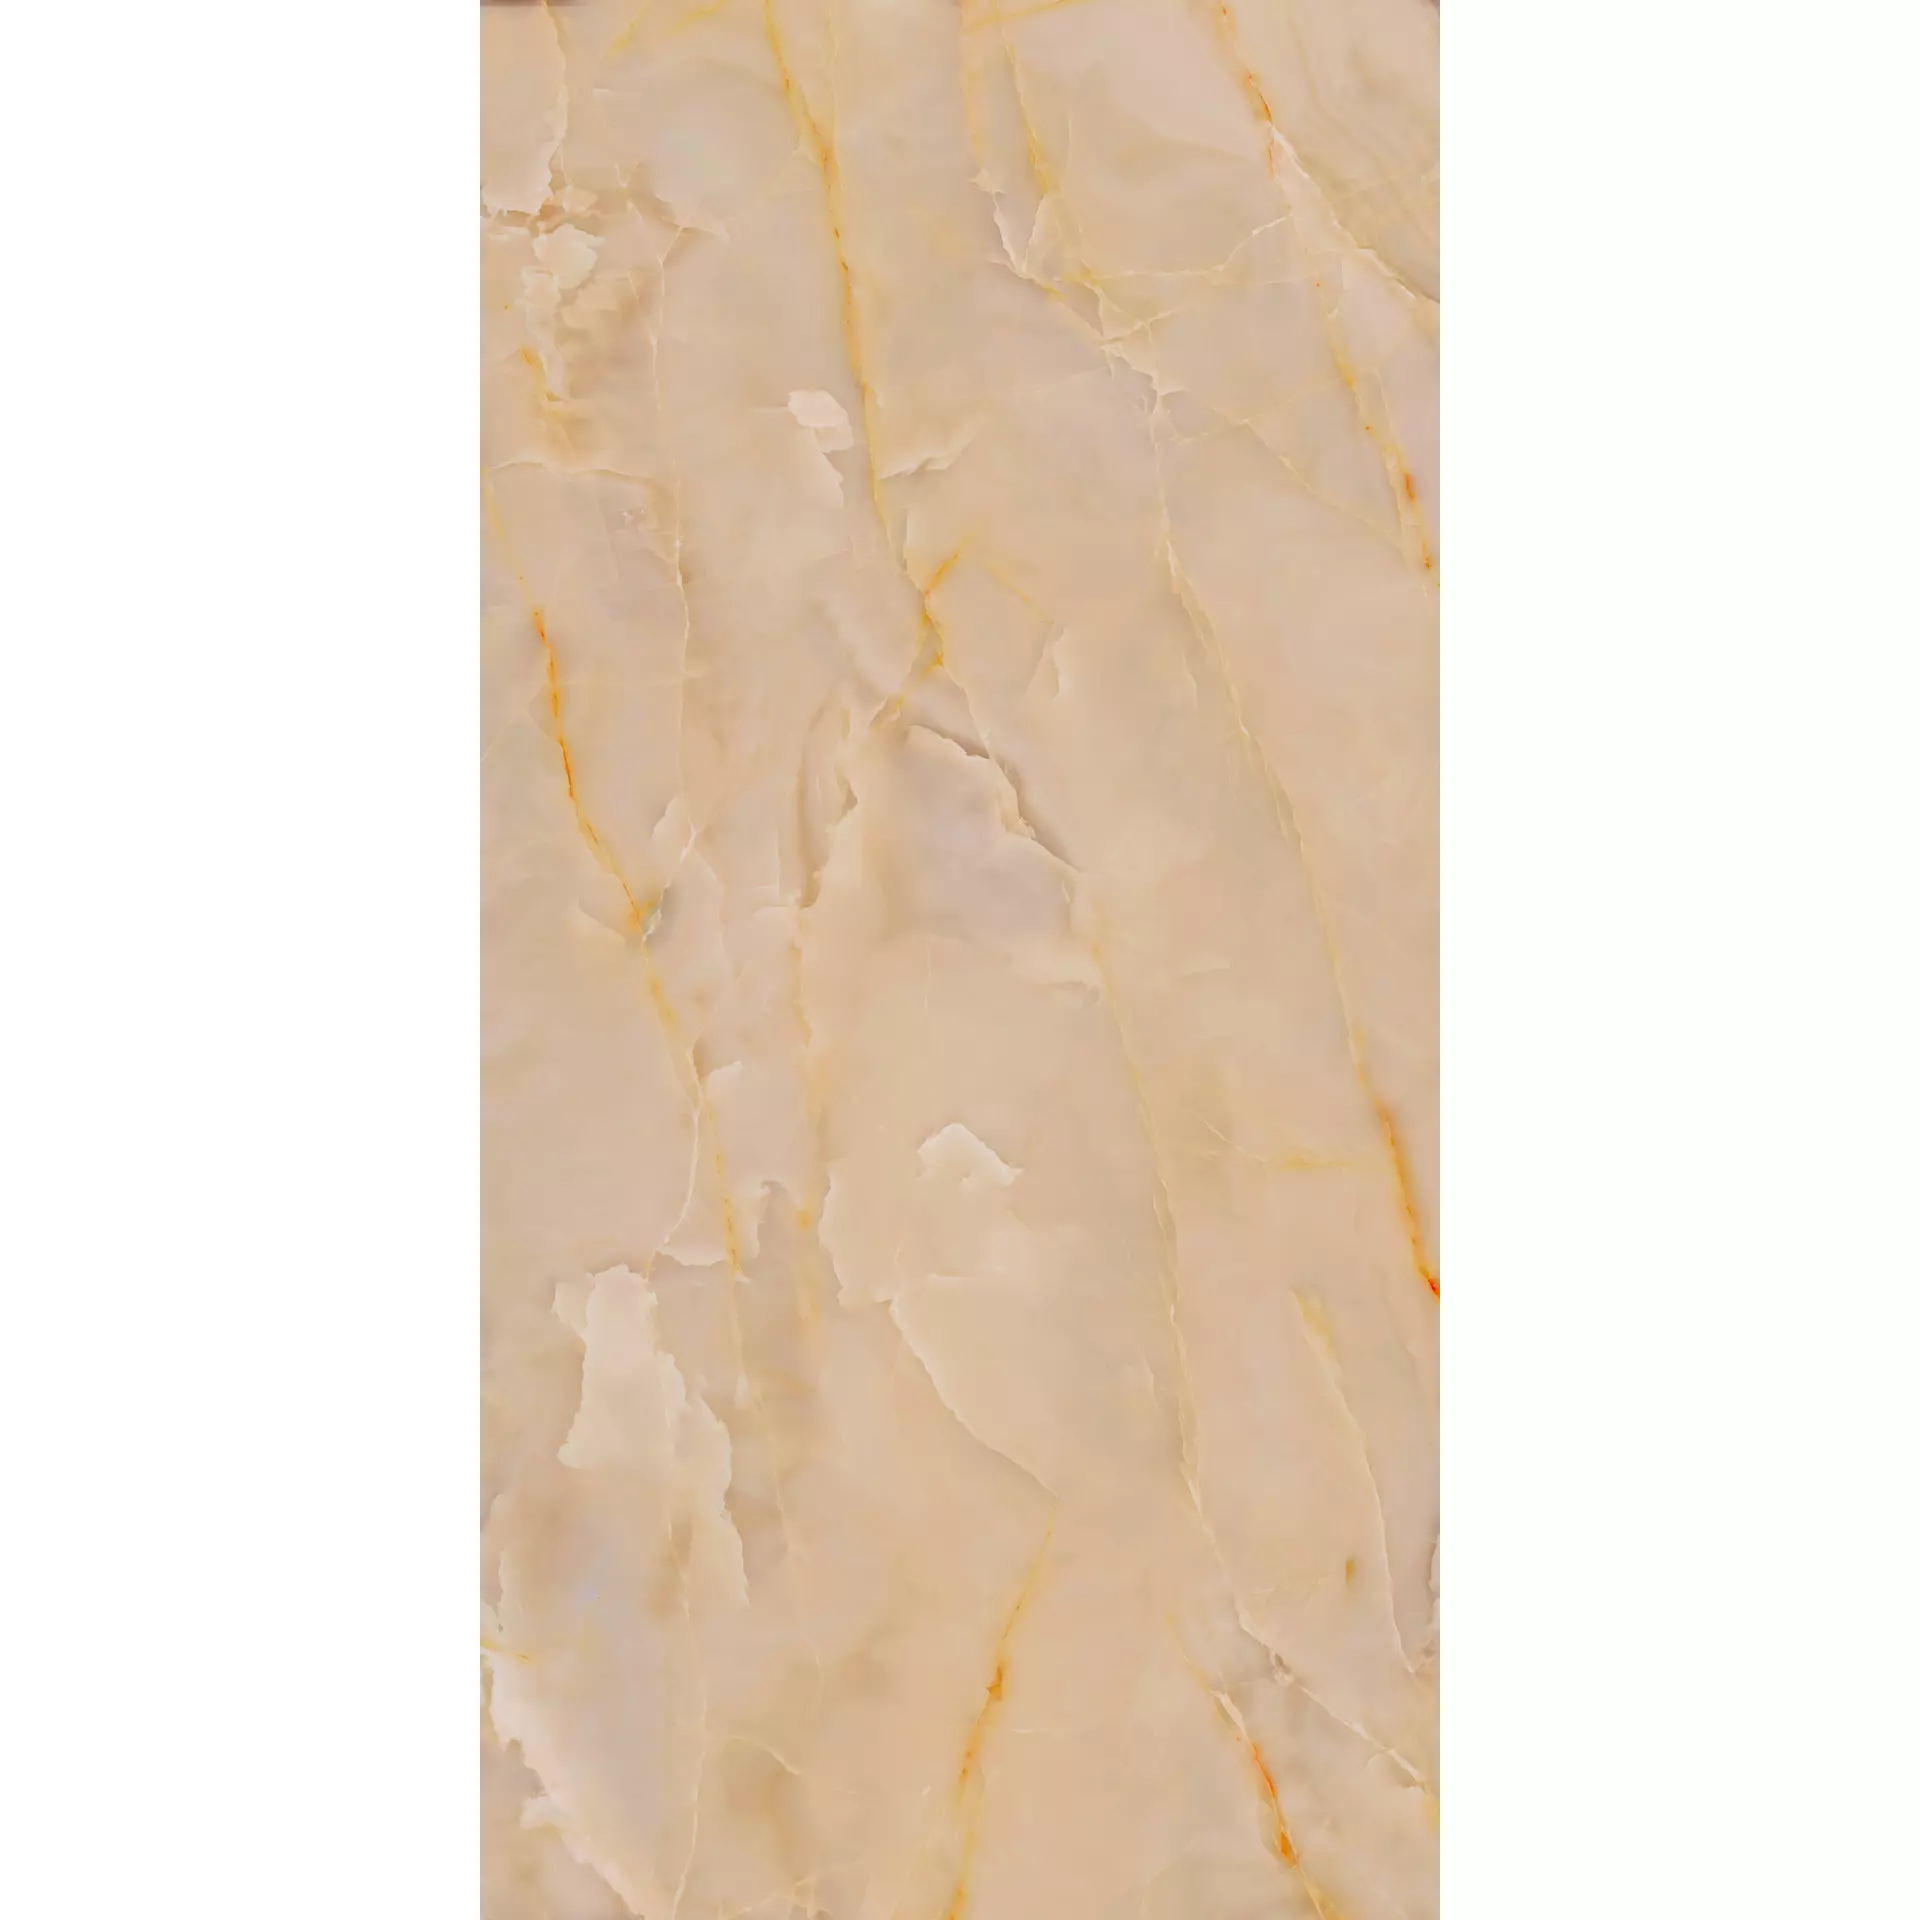 Marazzi Grande Marble Look Onice Beige Lux Onice Beige METP glaenzend 160x320cm stuoiato rektifiziert 6mm